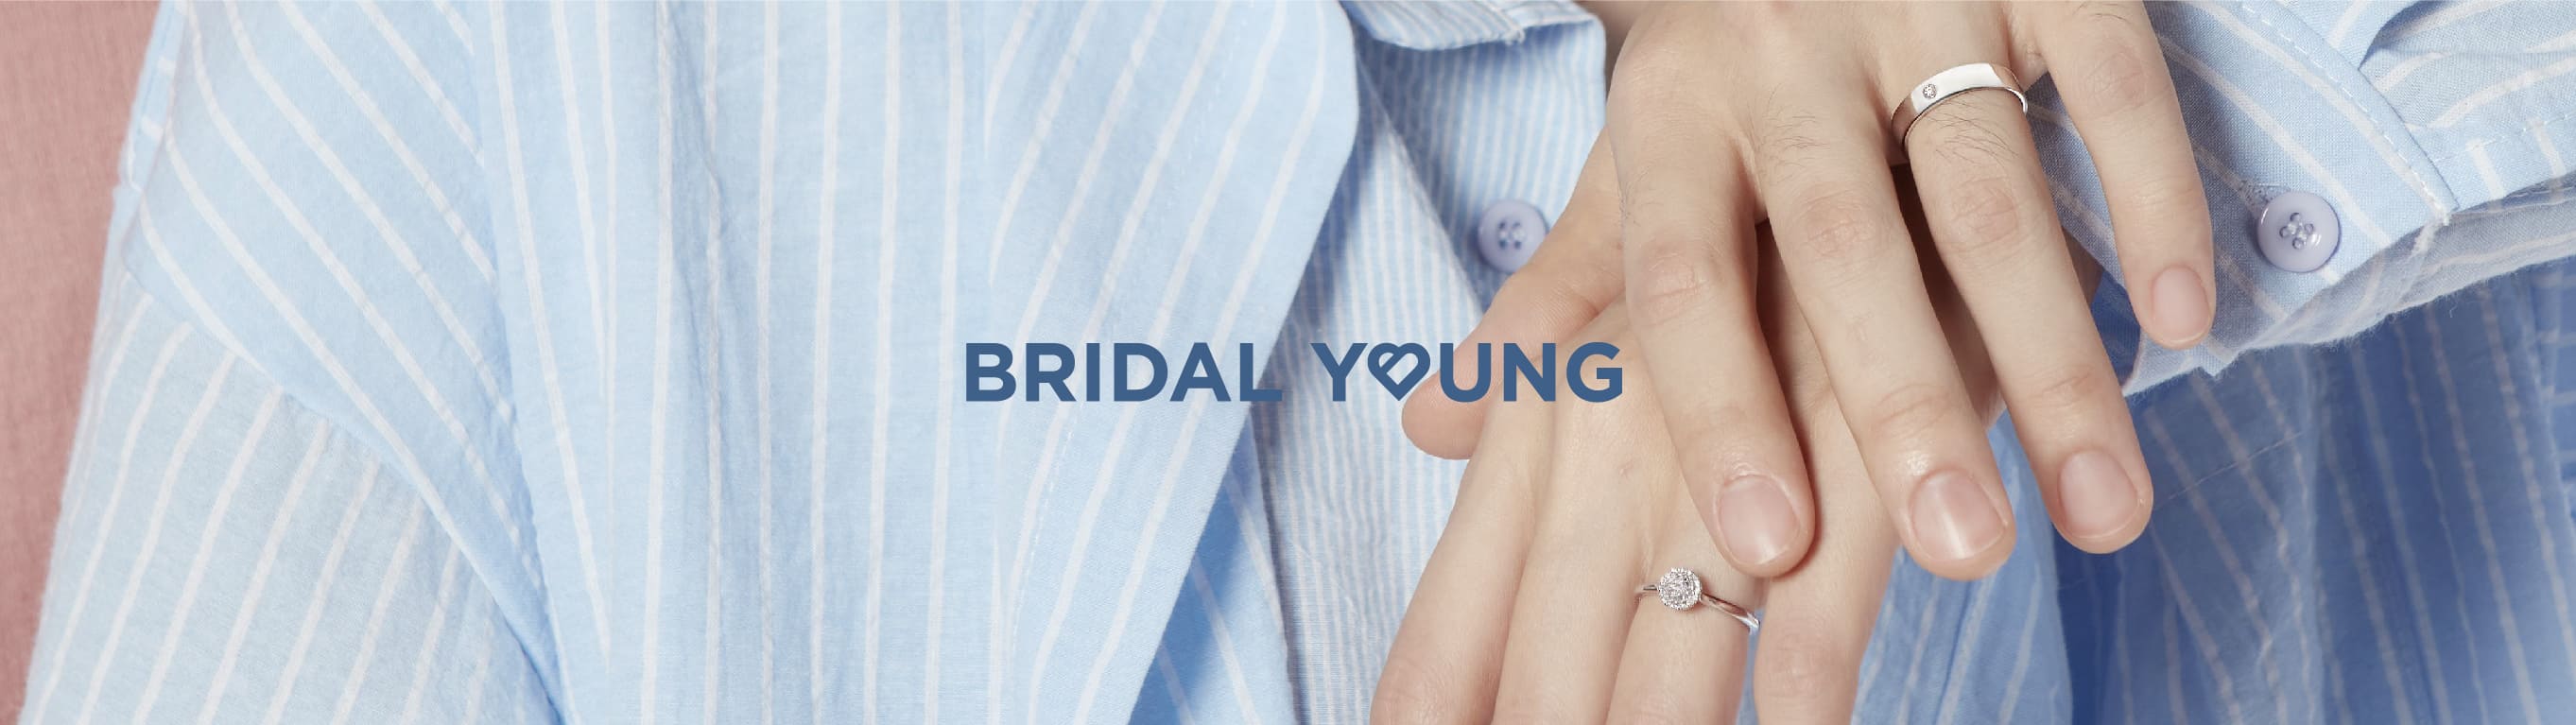 Bridal Young